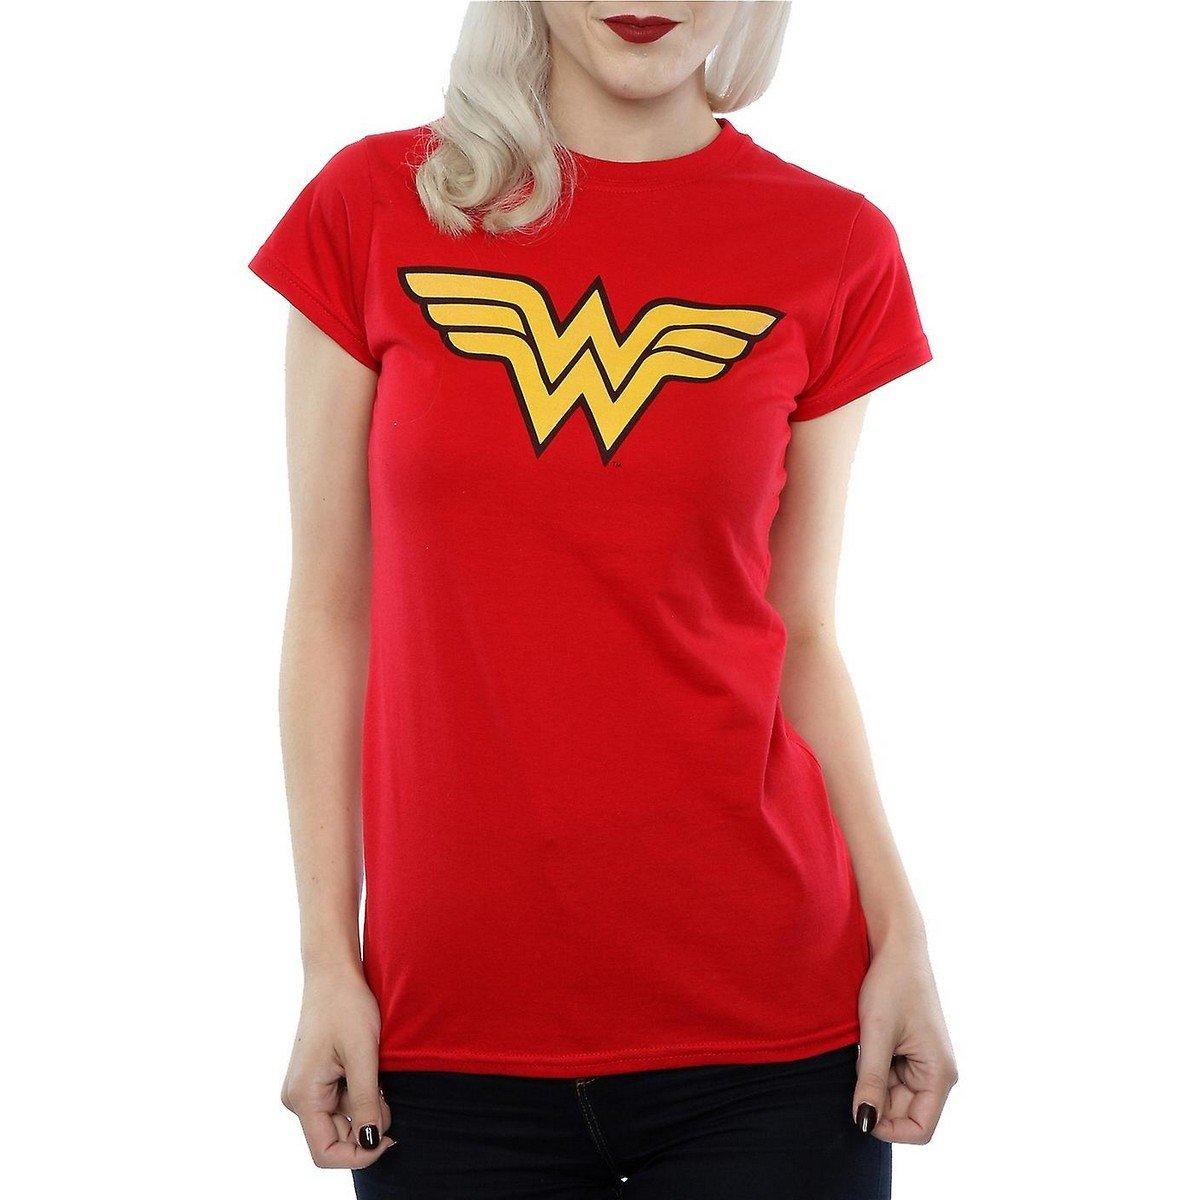 Tshirt Damen Rot Bunt L von Wonder Woman